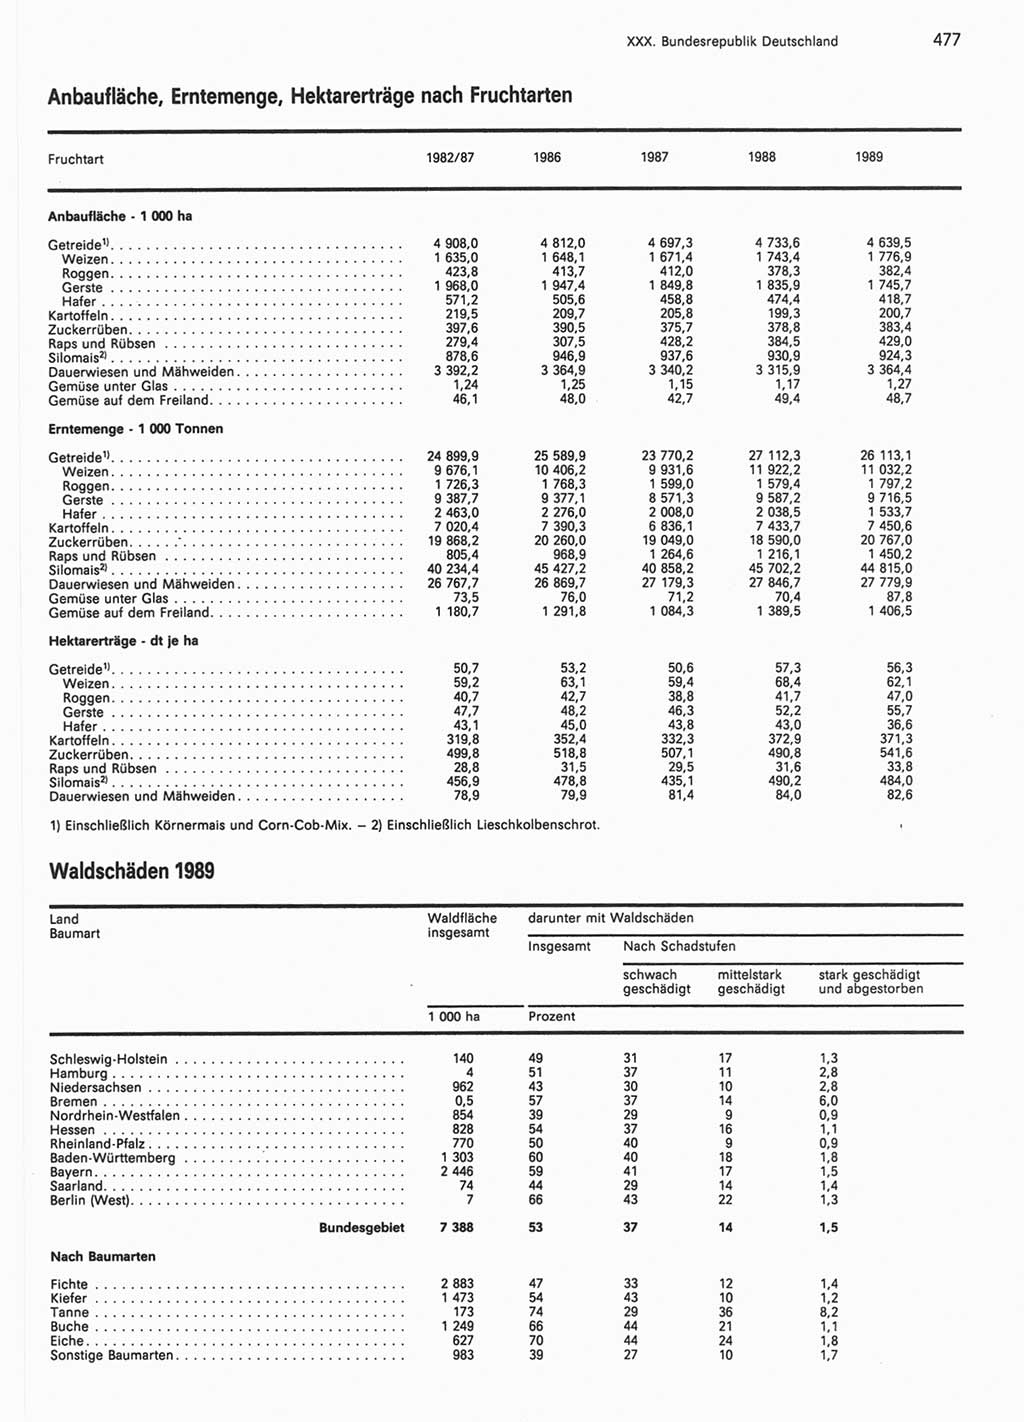 Statistisches Jahrbuch der Deutschen Demokratischen Republik (DDR) 1990, Seite 477 (Stat. Jb. DDR 1990, S. 477)